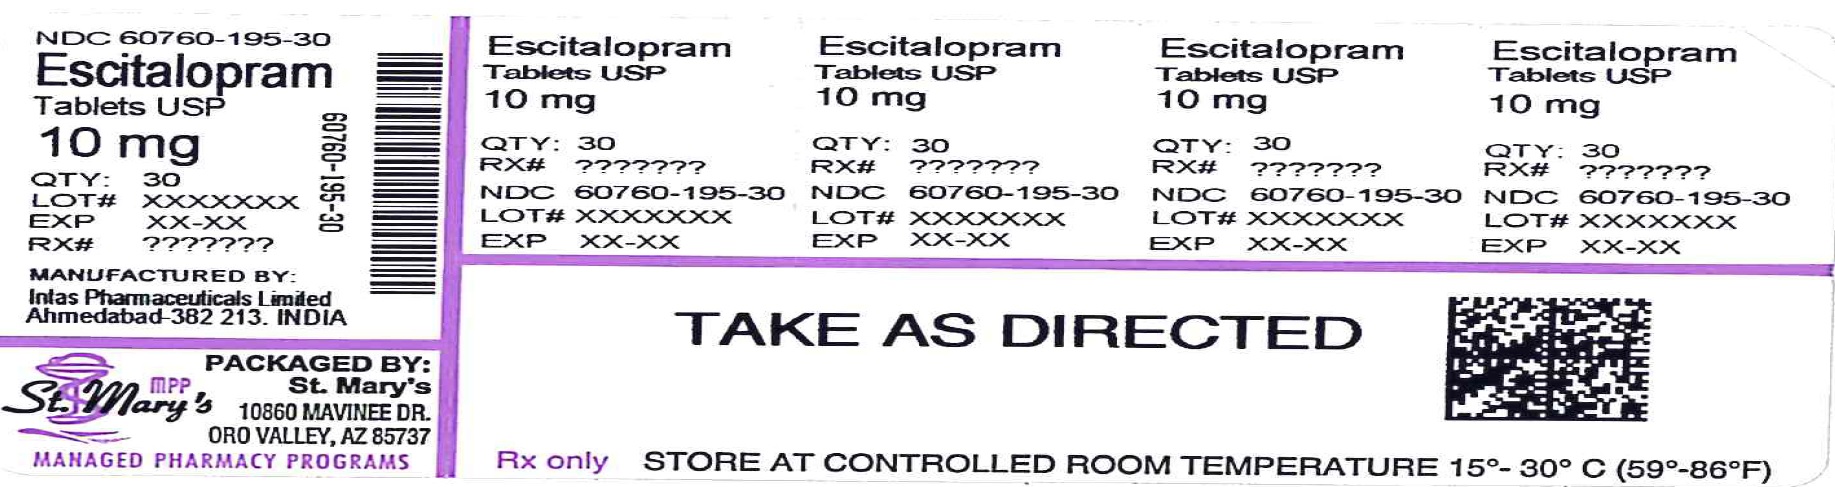 Escitalopram Label